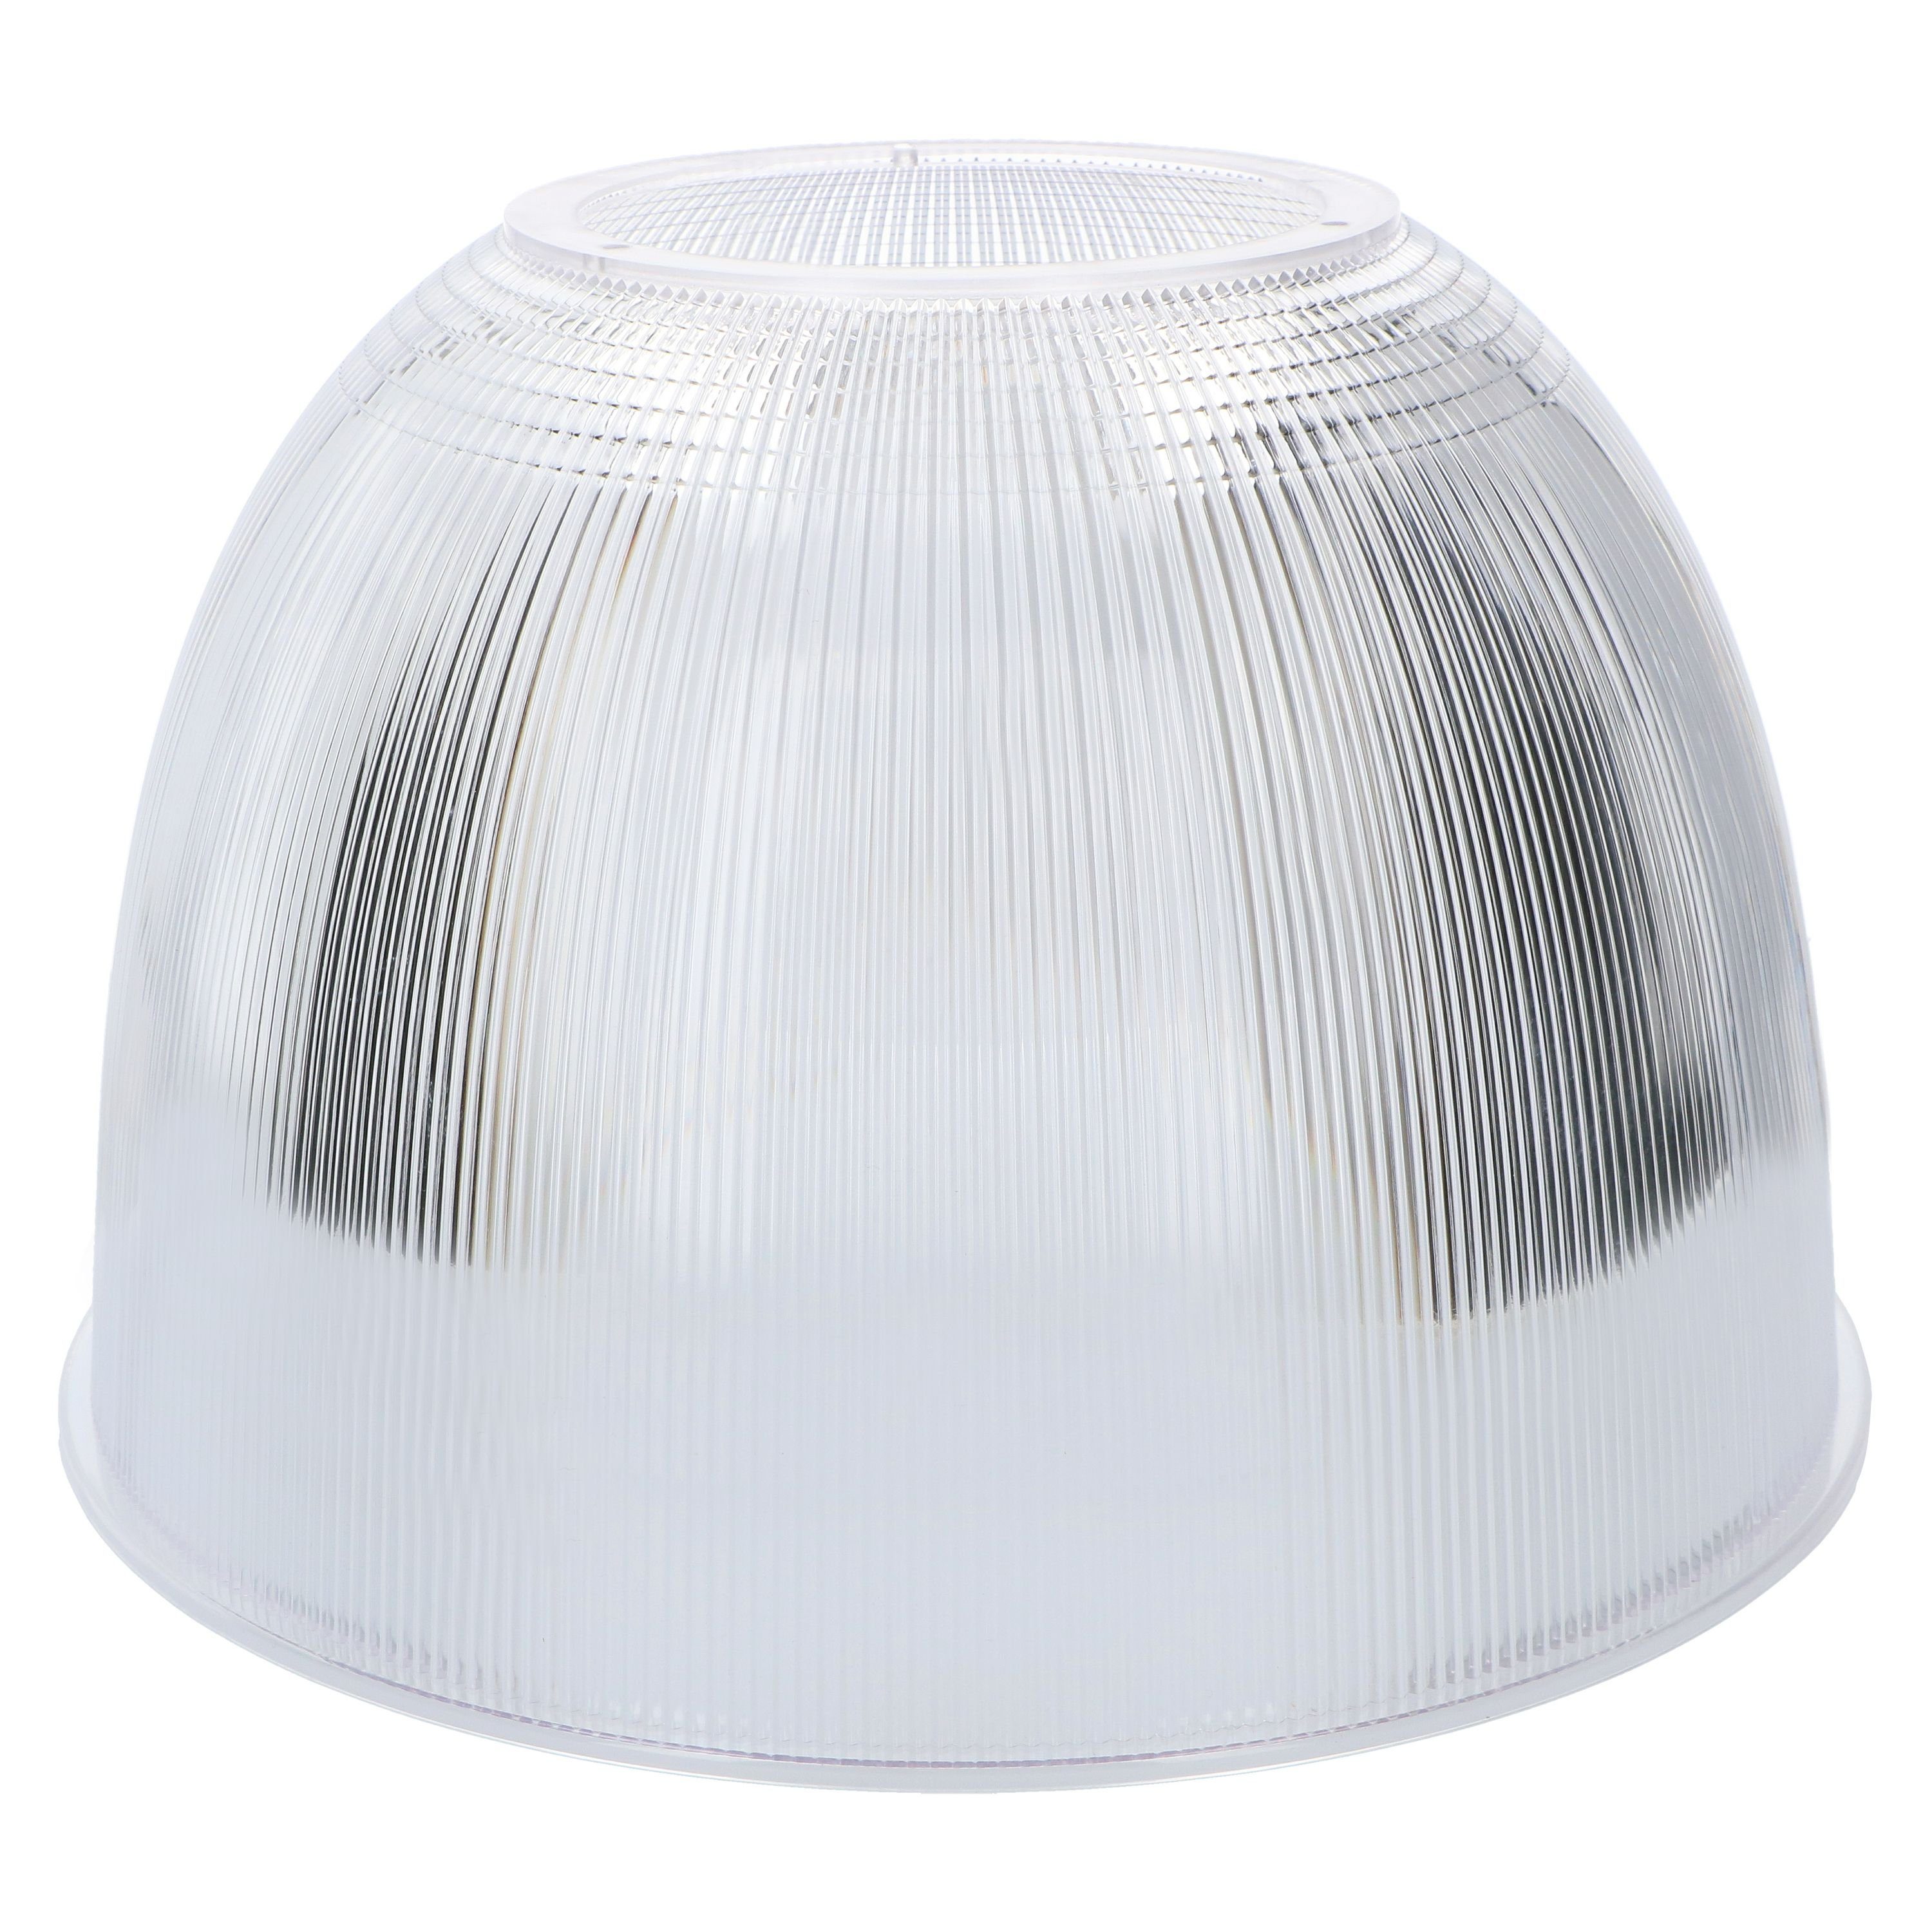 Pendelleuchte Reflektor für passend 70°, LED, 240034X-1 LED-Hallentiefstrahler light LED's LED